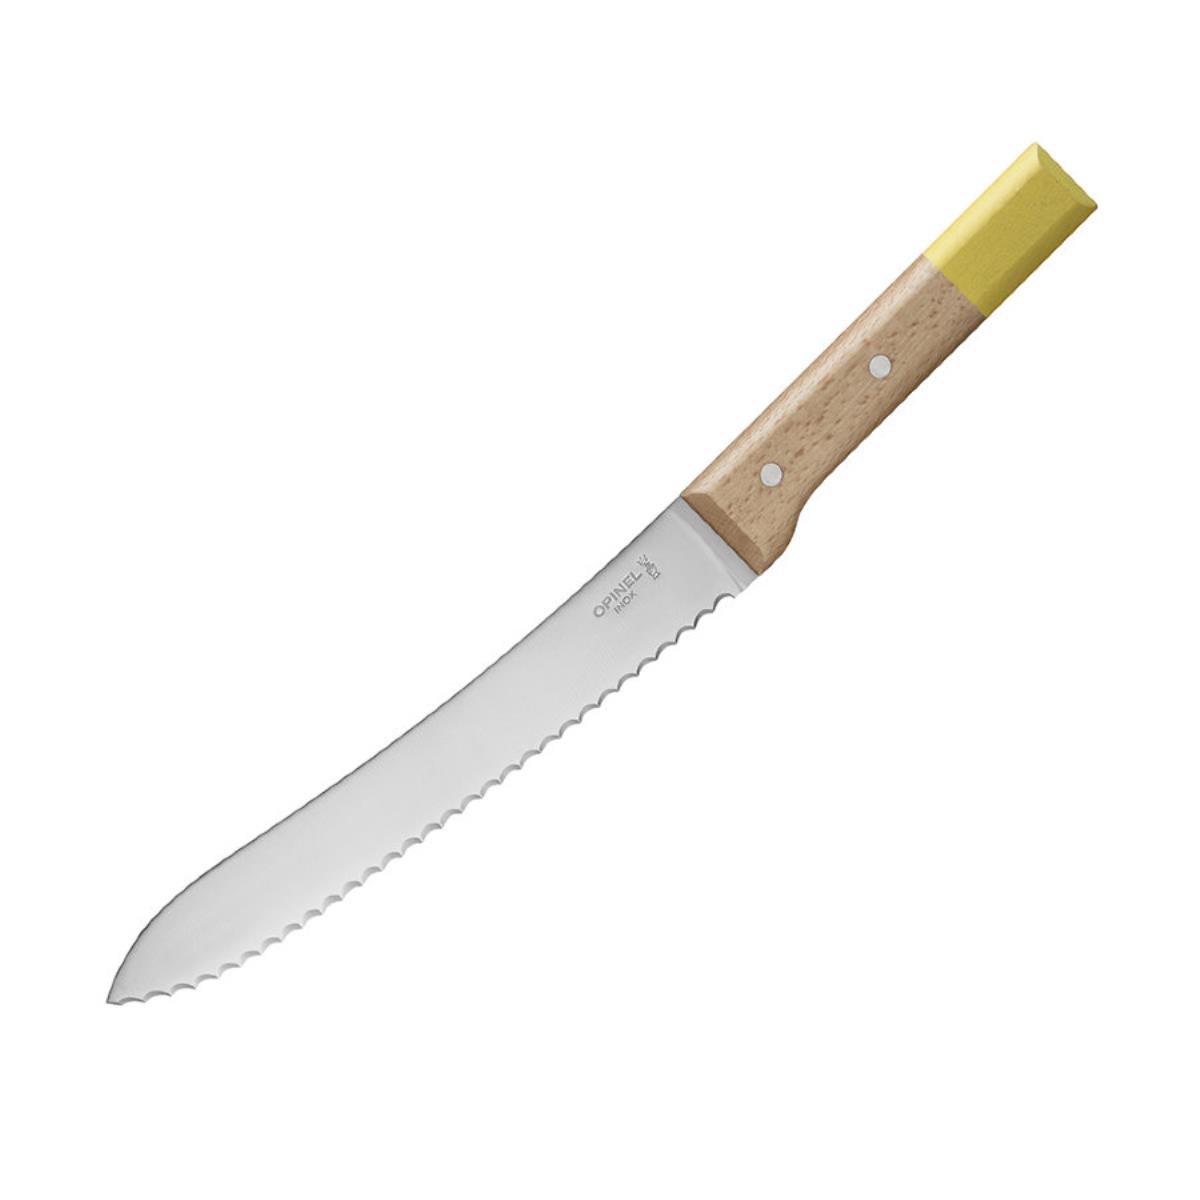 Нож кухонный №116 VRI Parallele для хлеба (нерж. сталь, рукоять бук, длина клинка 21 см) OPINEL кухонный нож для хлеба ladina